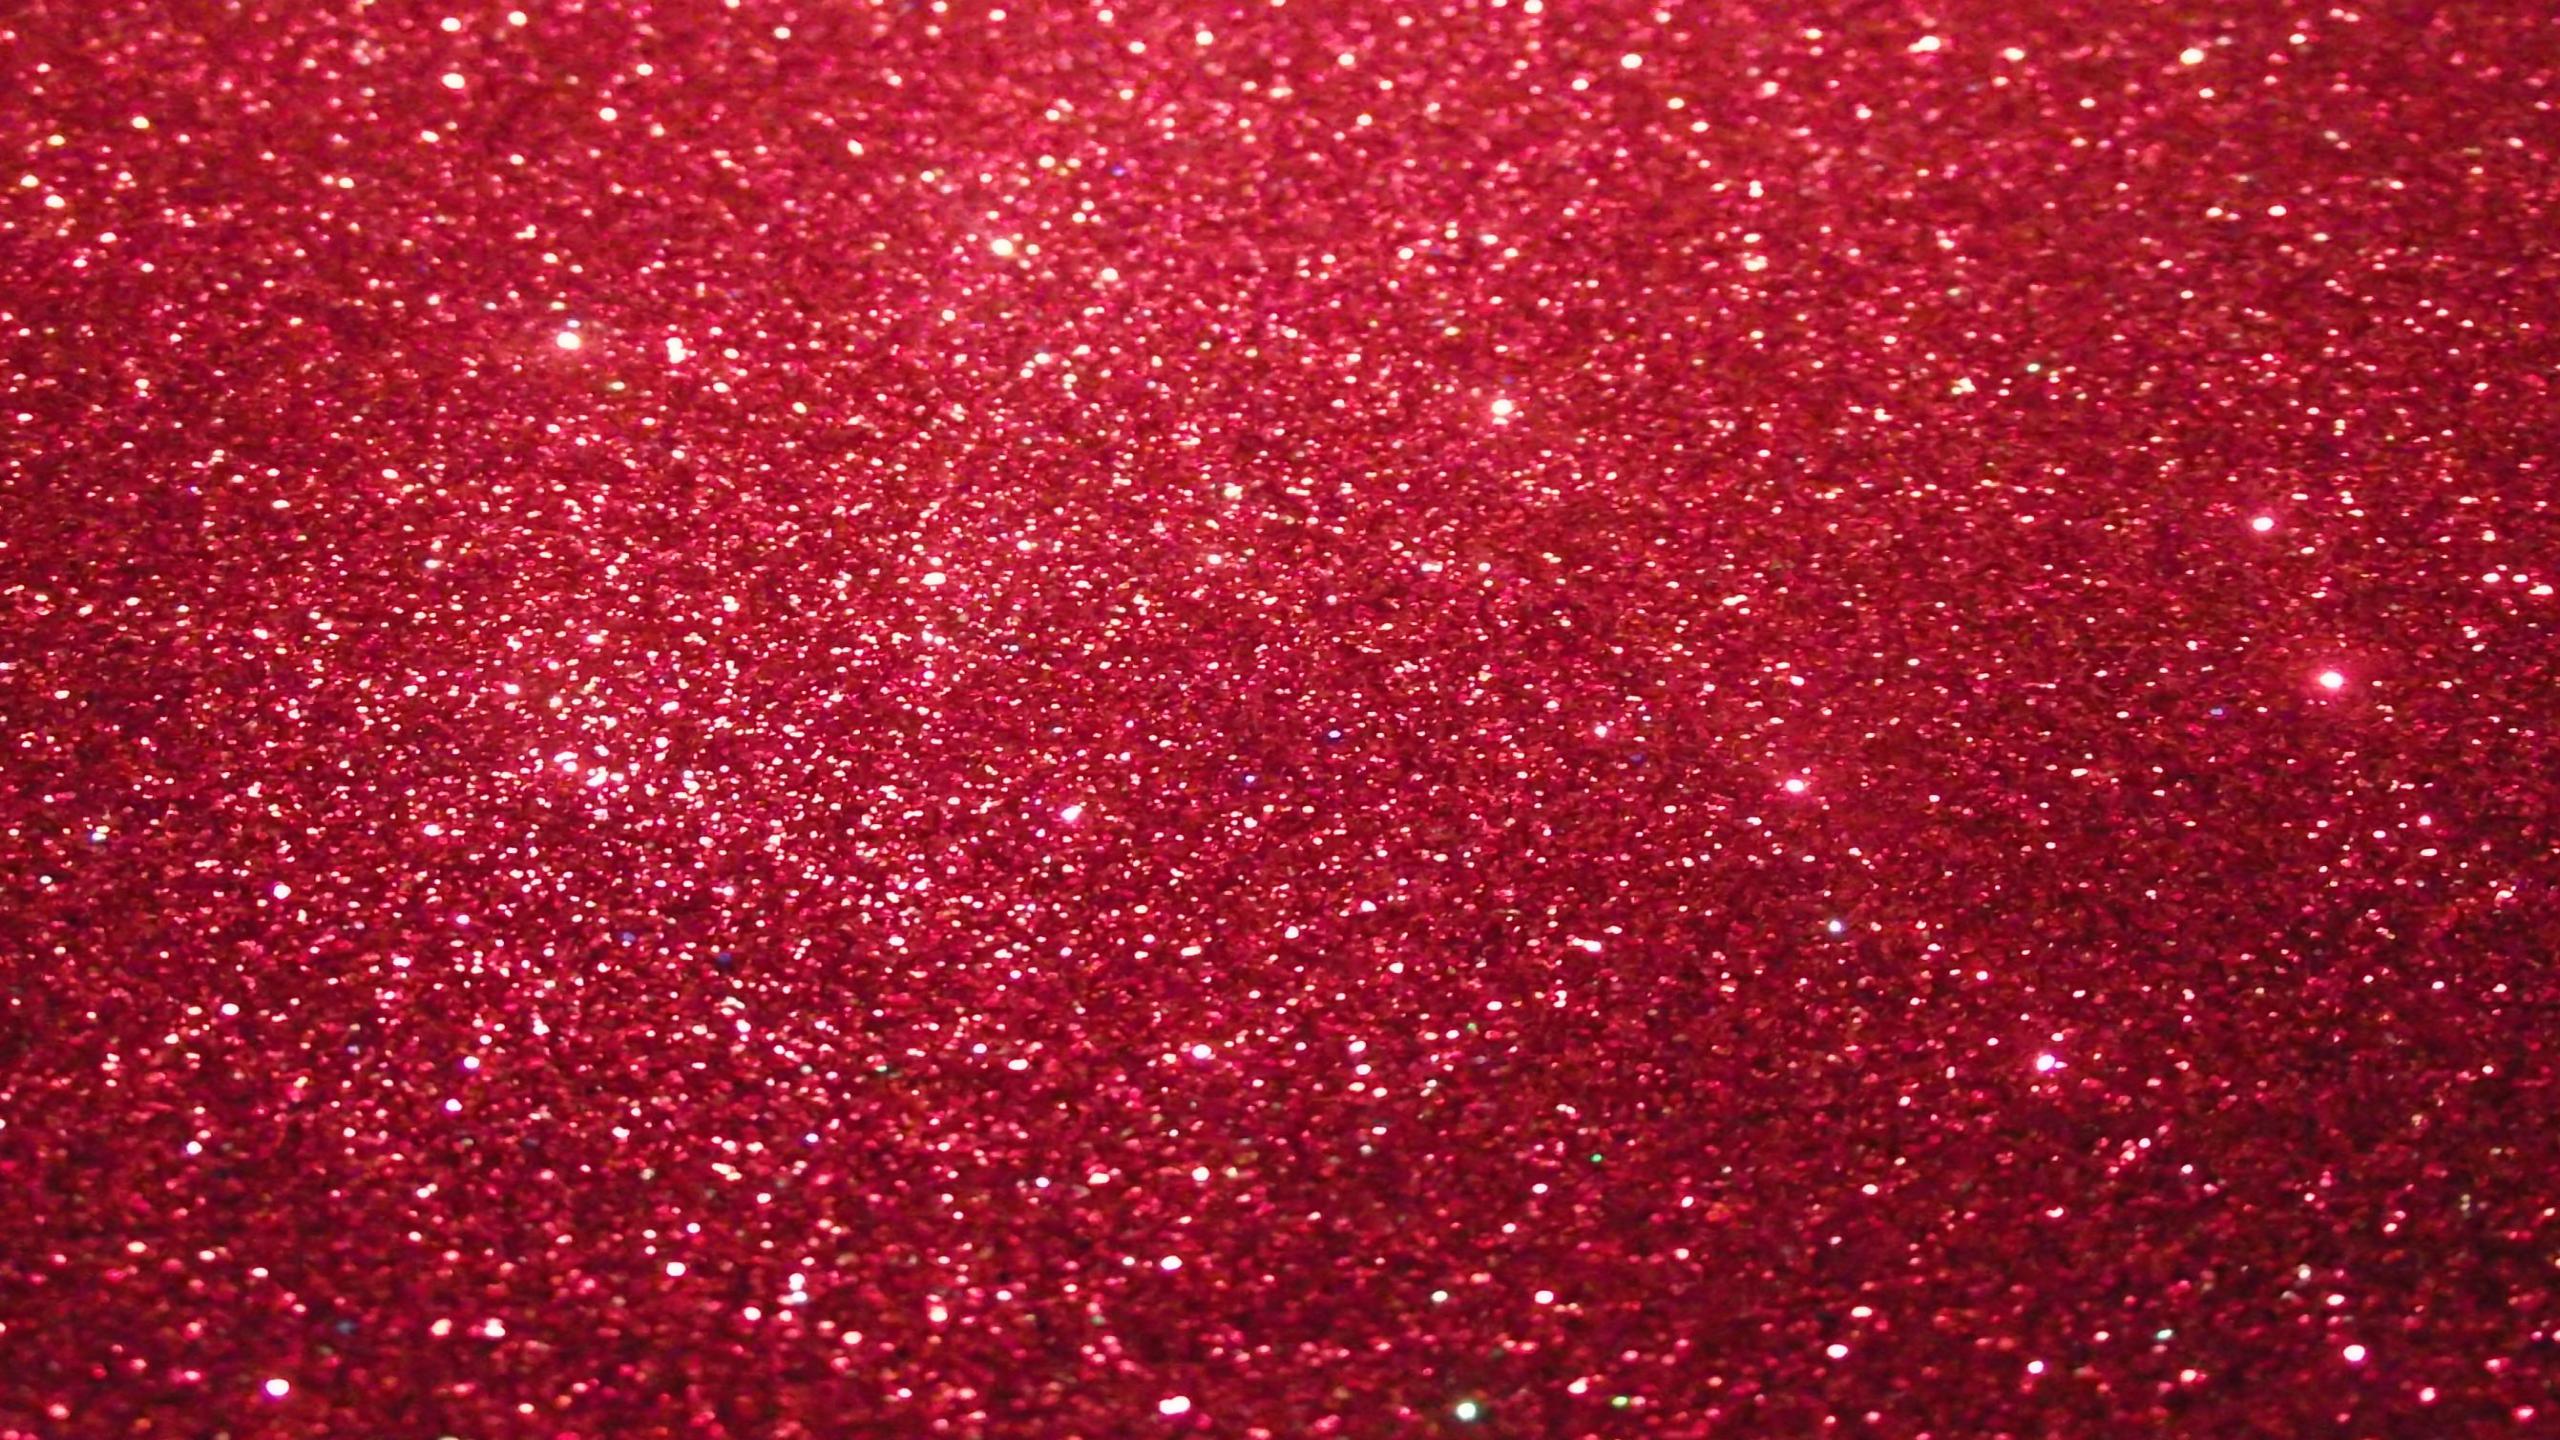 Red Glitter Background Image Size Violet